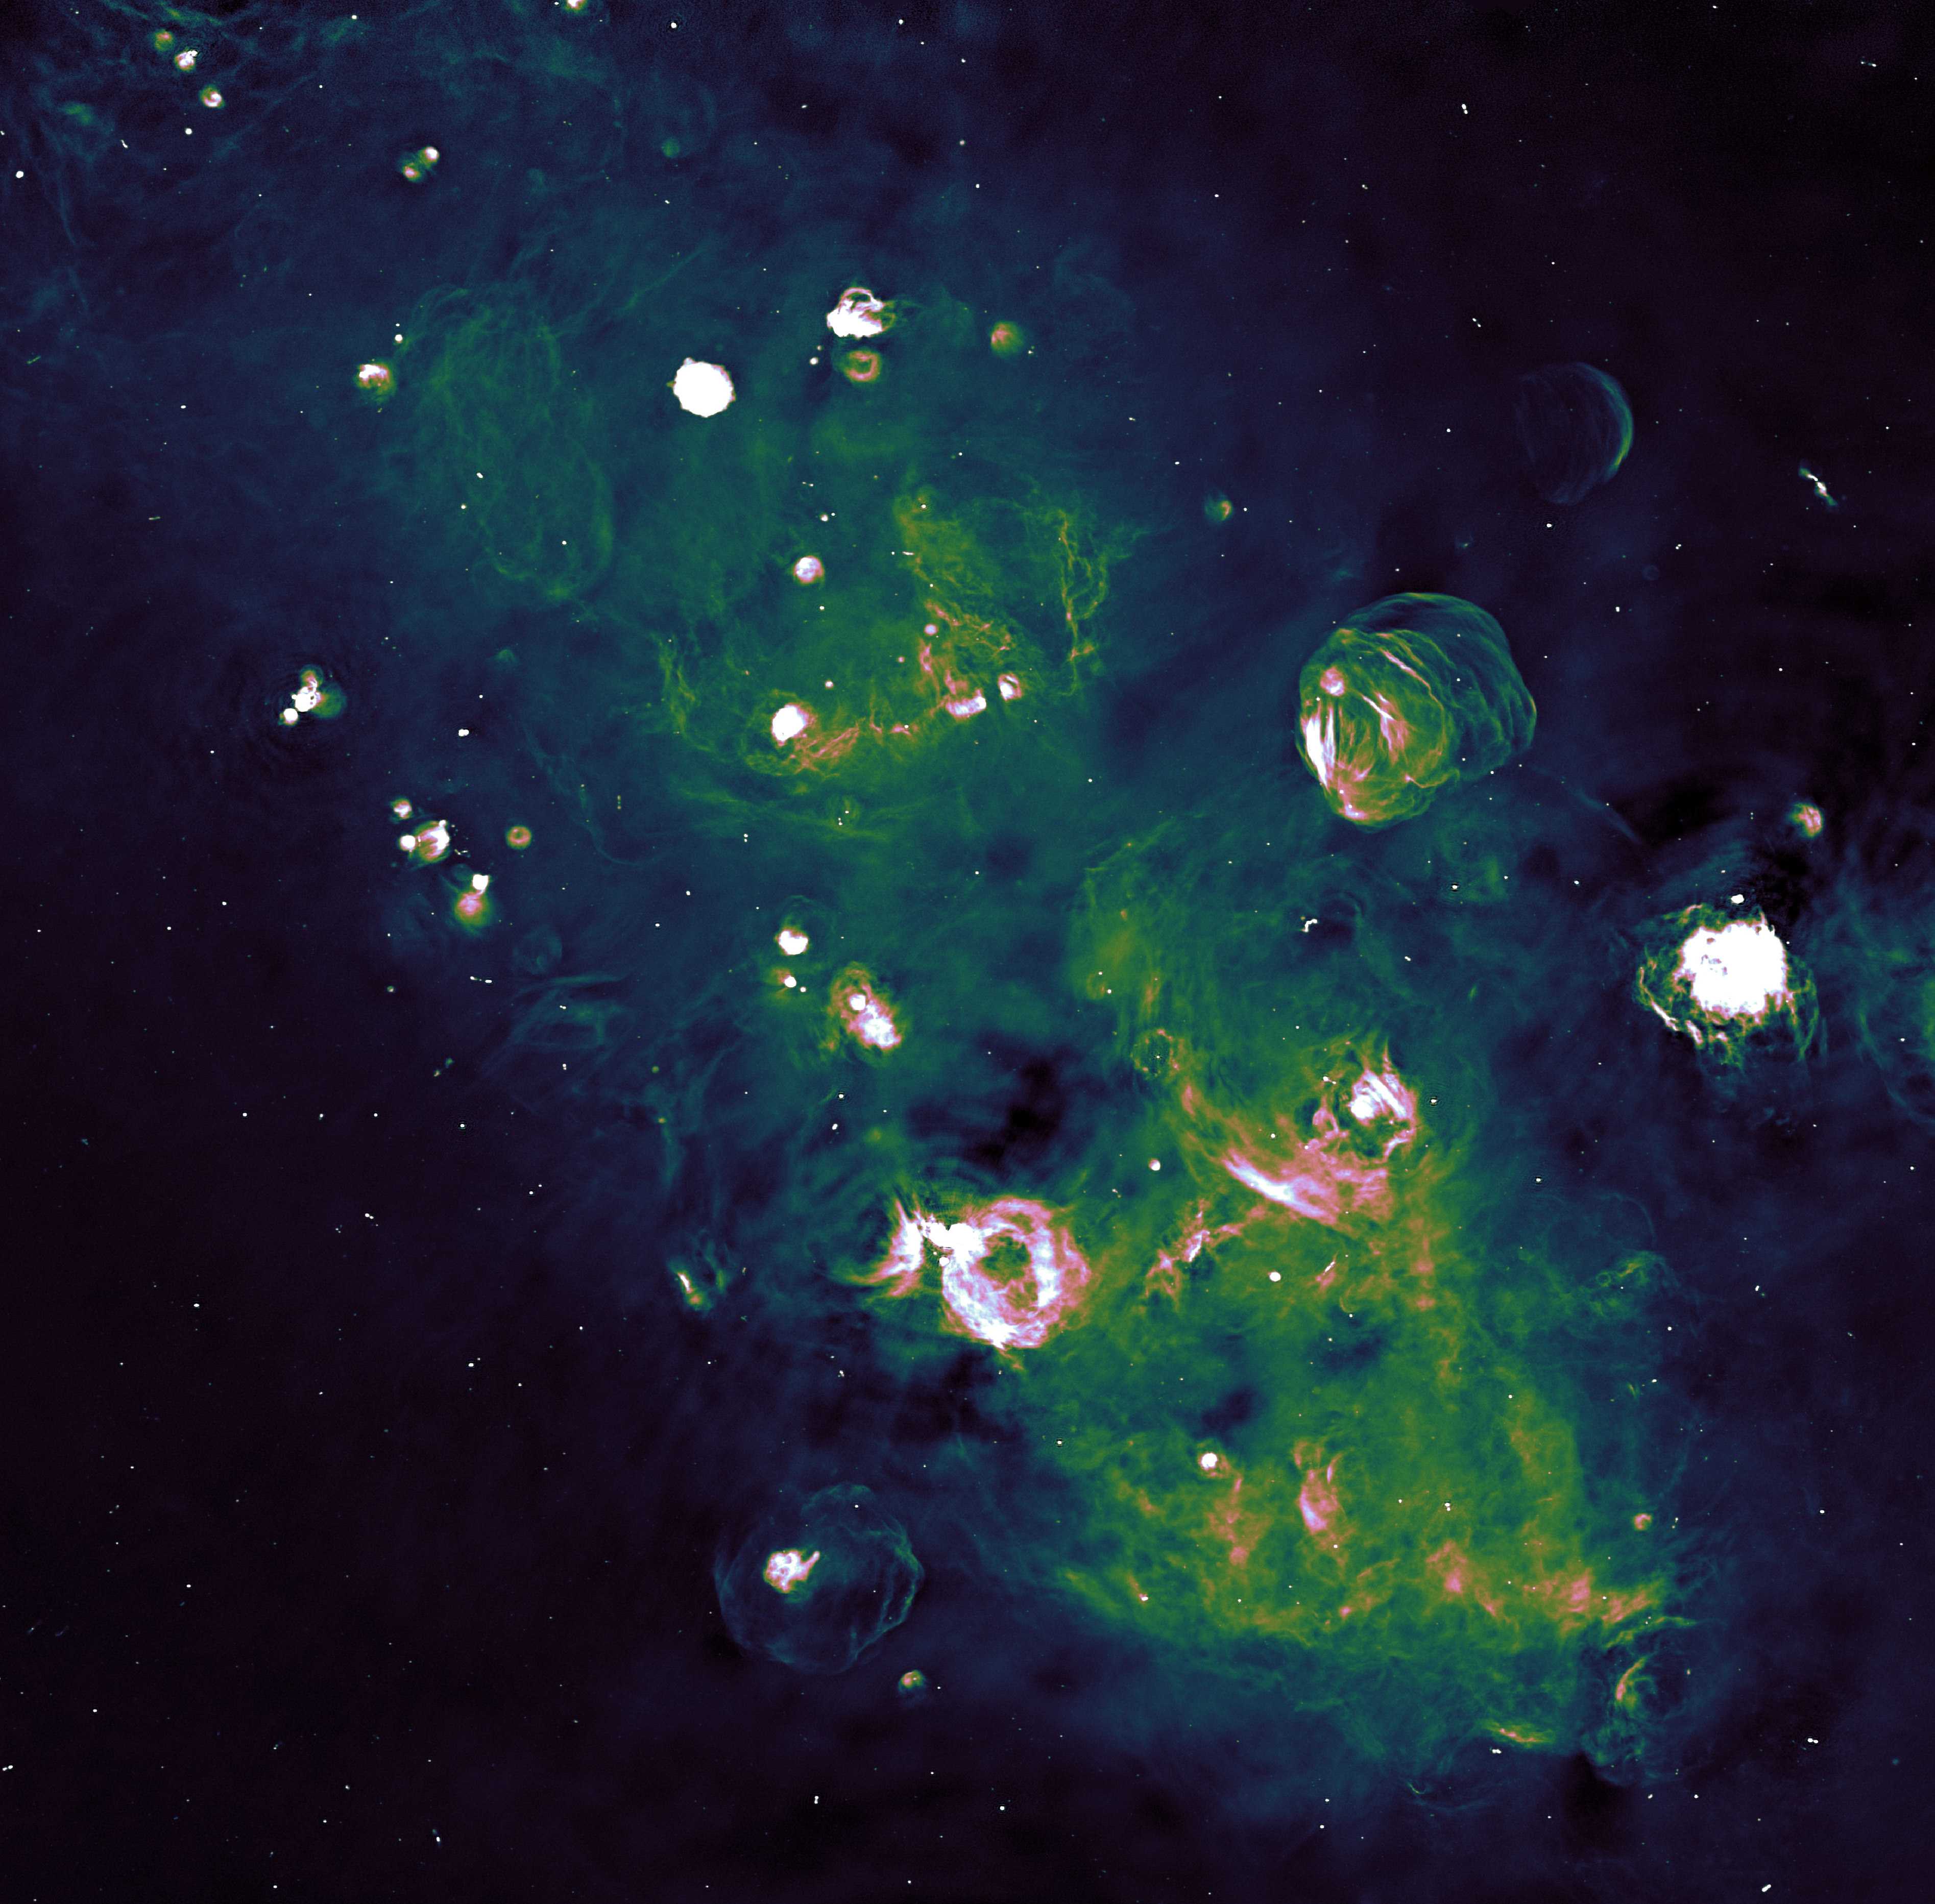 Исследователи представили подробное изображение небольшого участка Млечного Пути